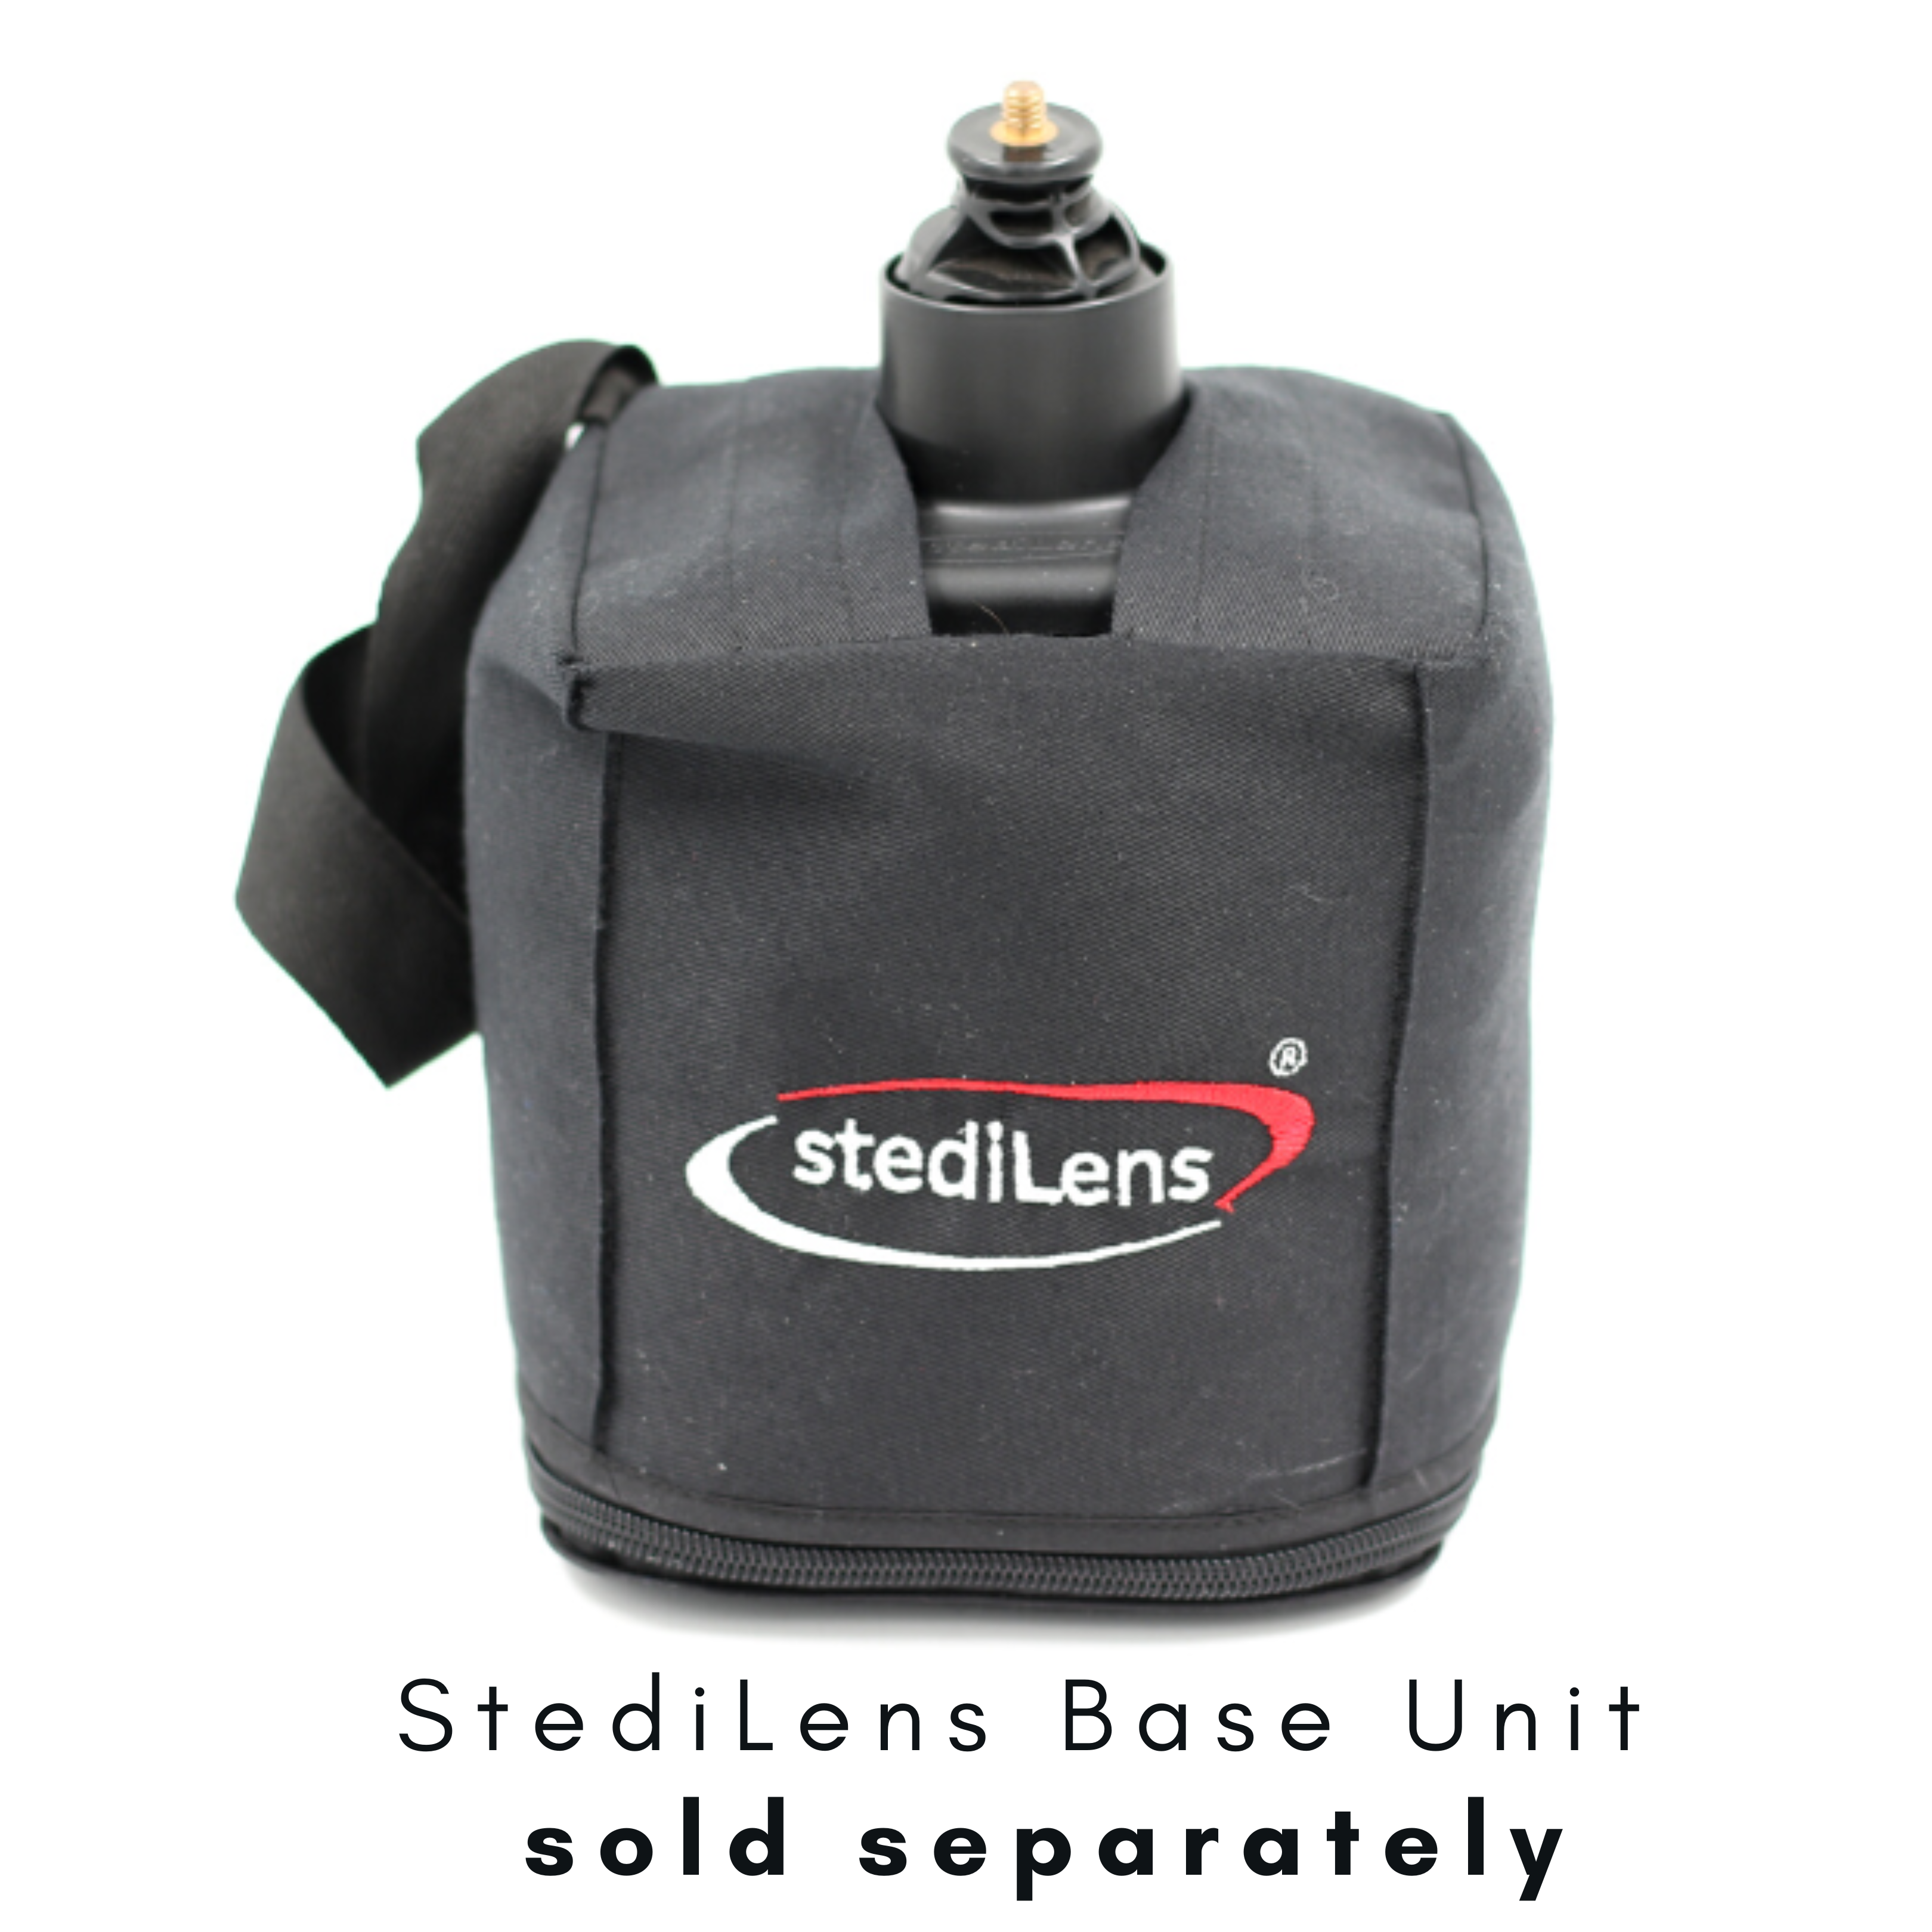 StediLens Beanbag Camera tek